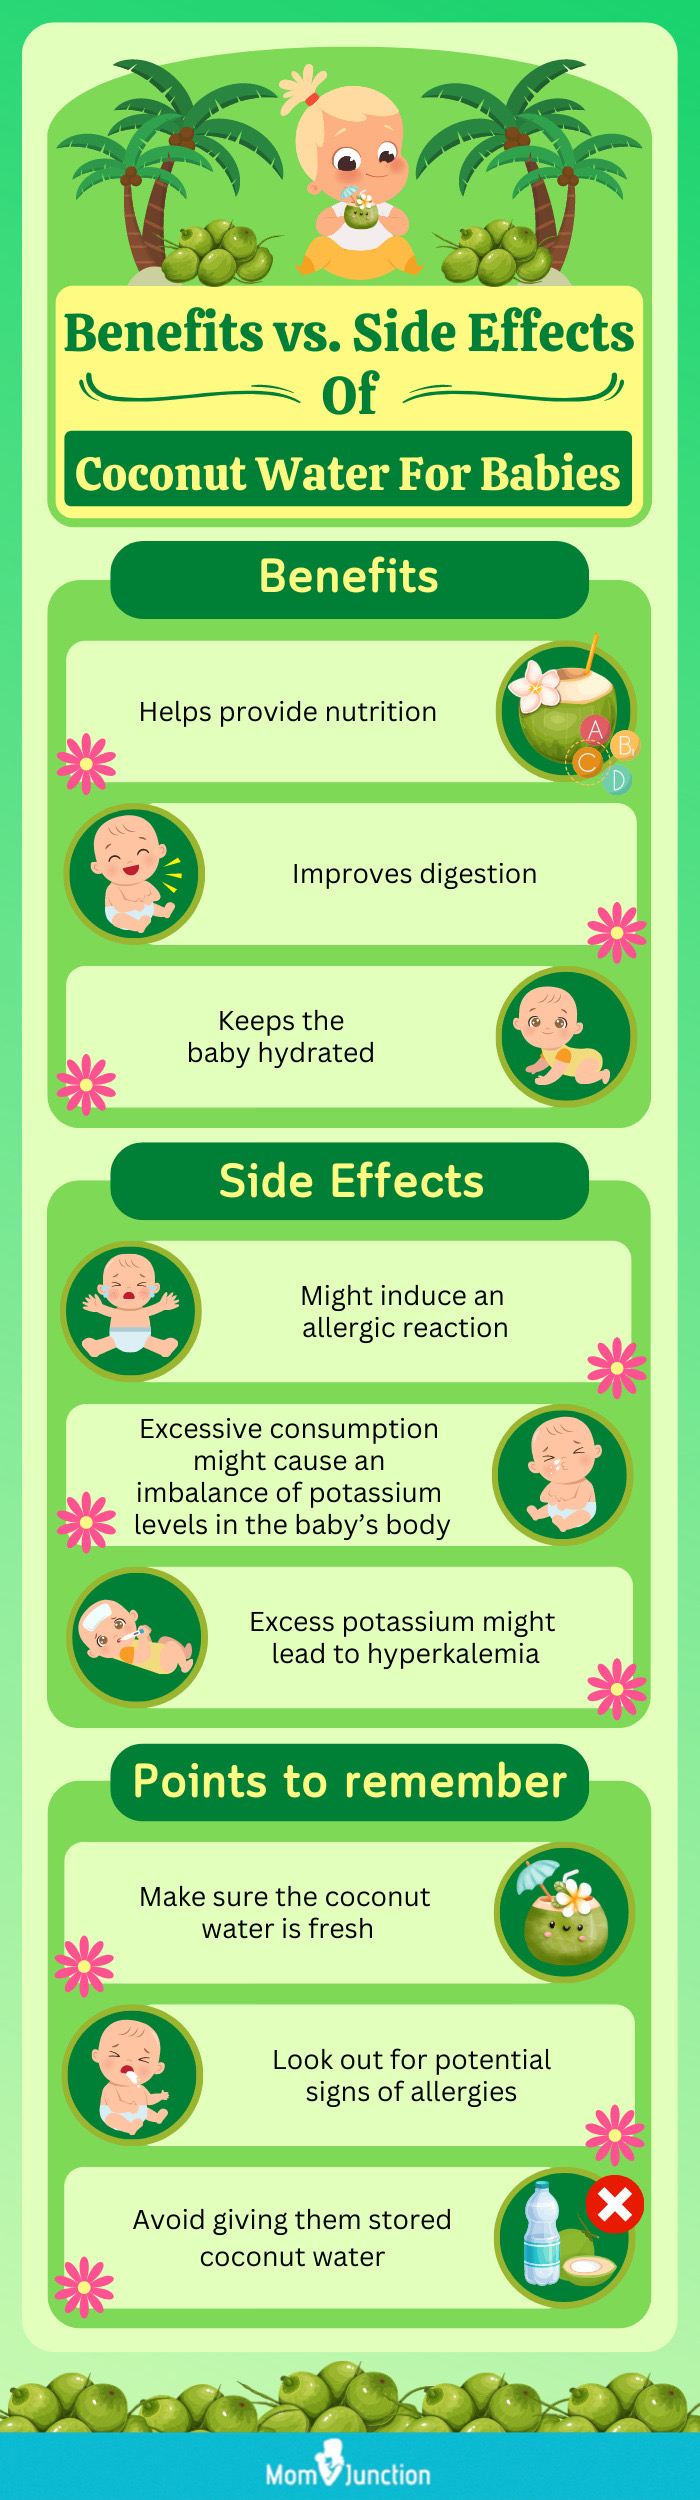 椰子水对婴儿的好处和副作用(信息图)